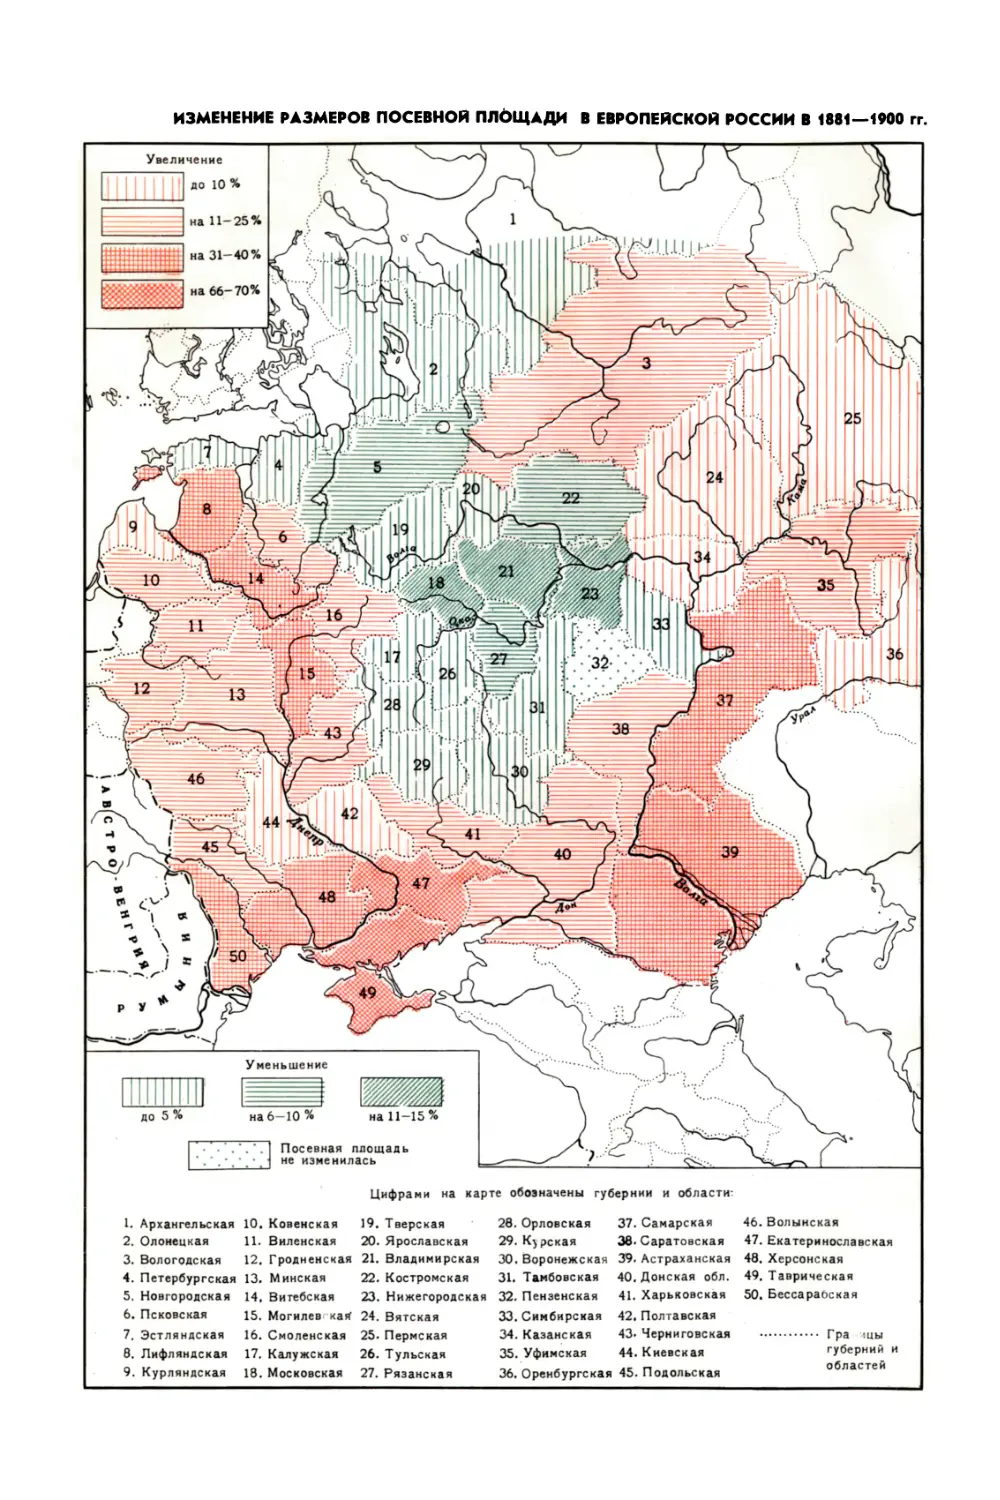 Вклейка. Изменение размеров посевной площади в Европейской России в 1881-1900 гг.